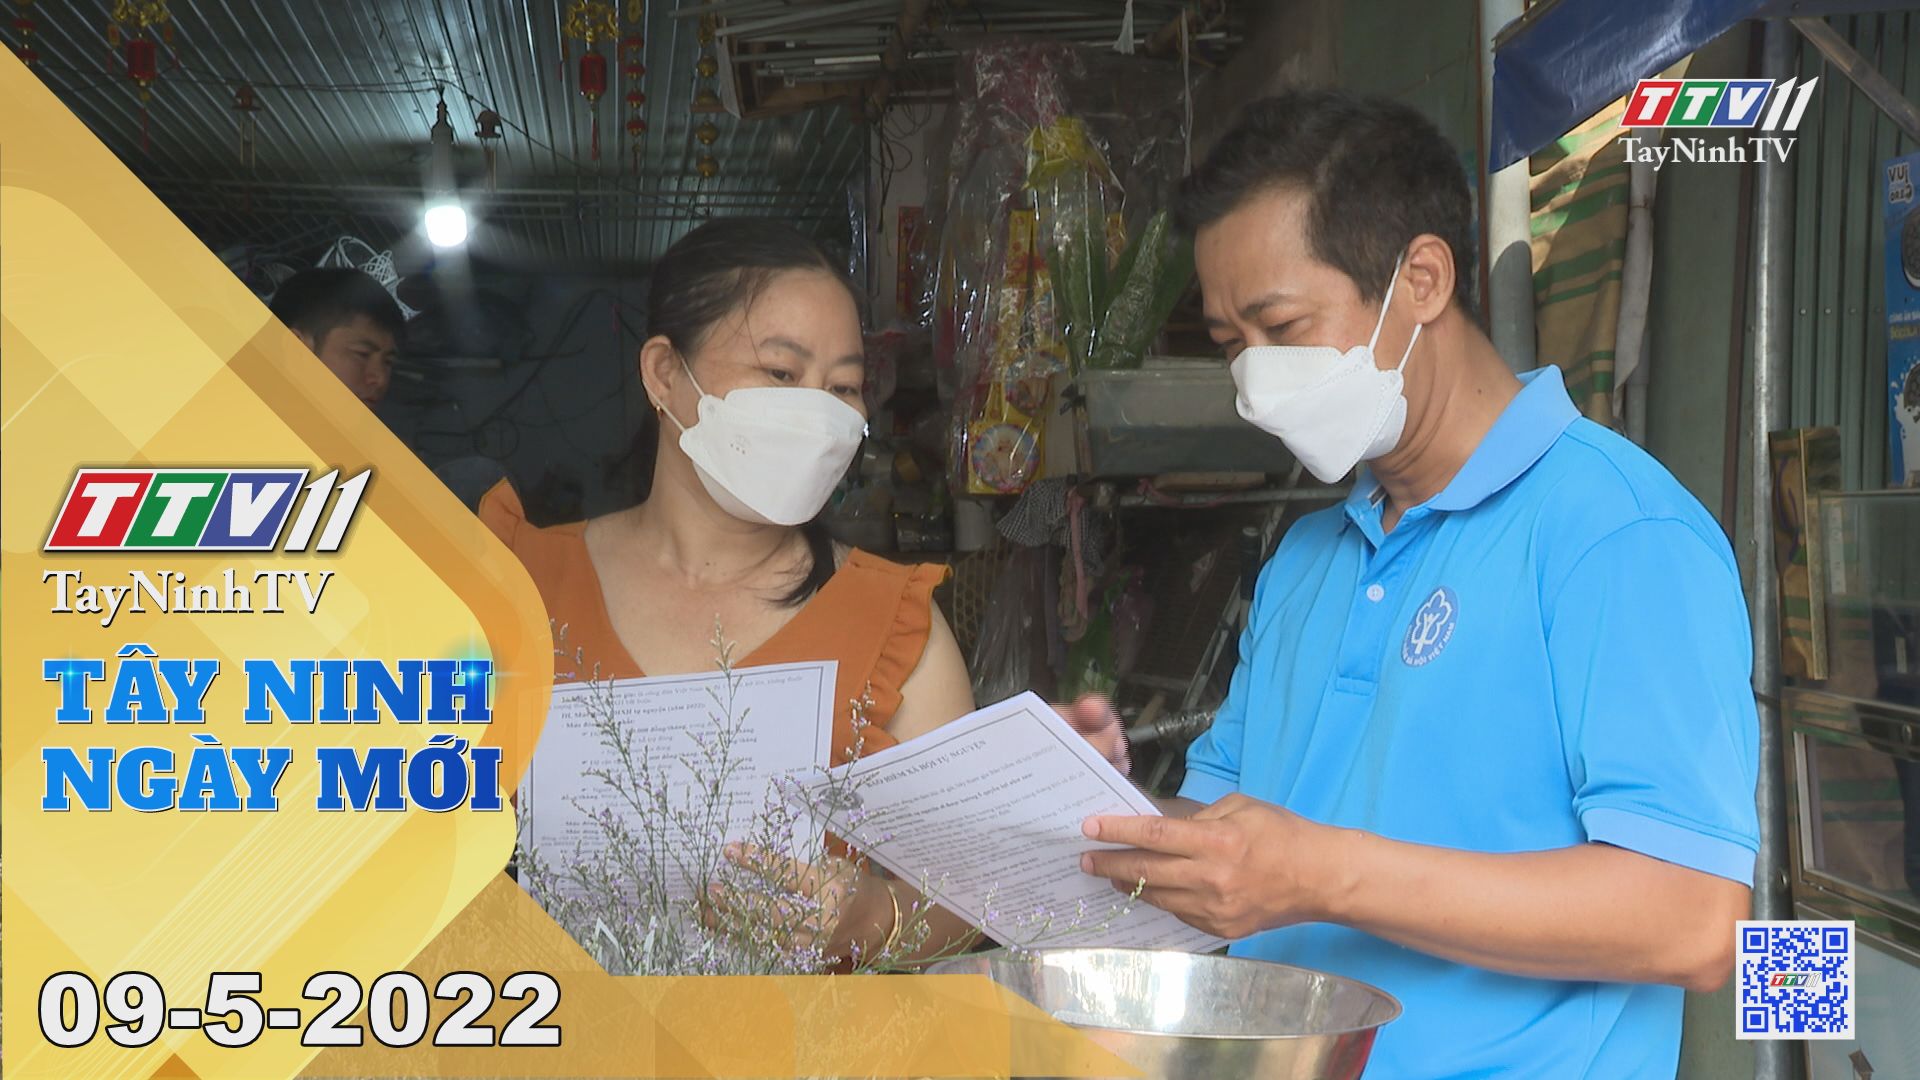 Tây Ninh ngày mới 09-5-2022 | Tin tức hôm nay | TayNinhTV